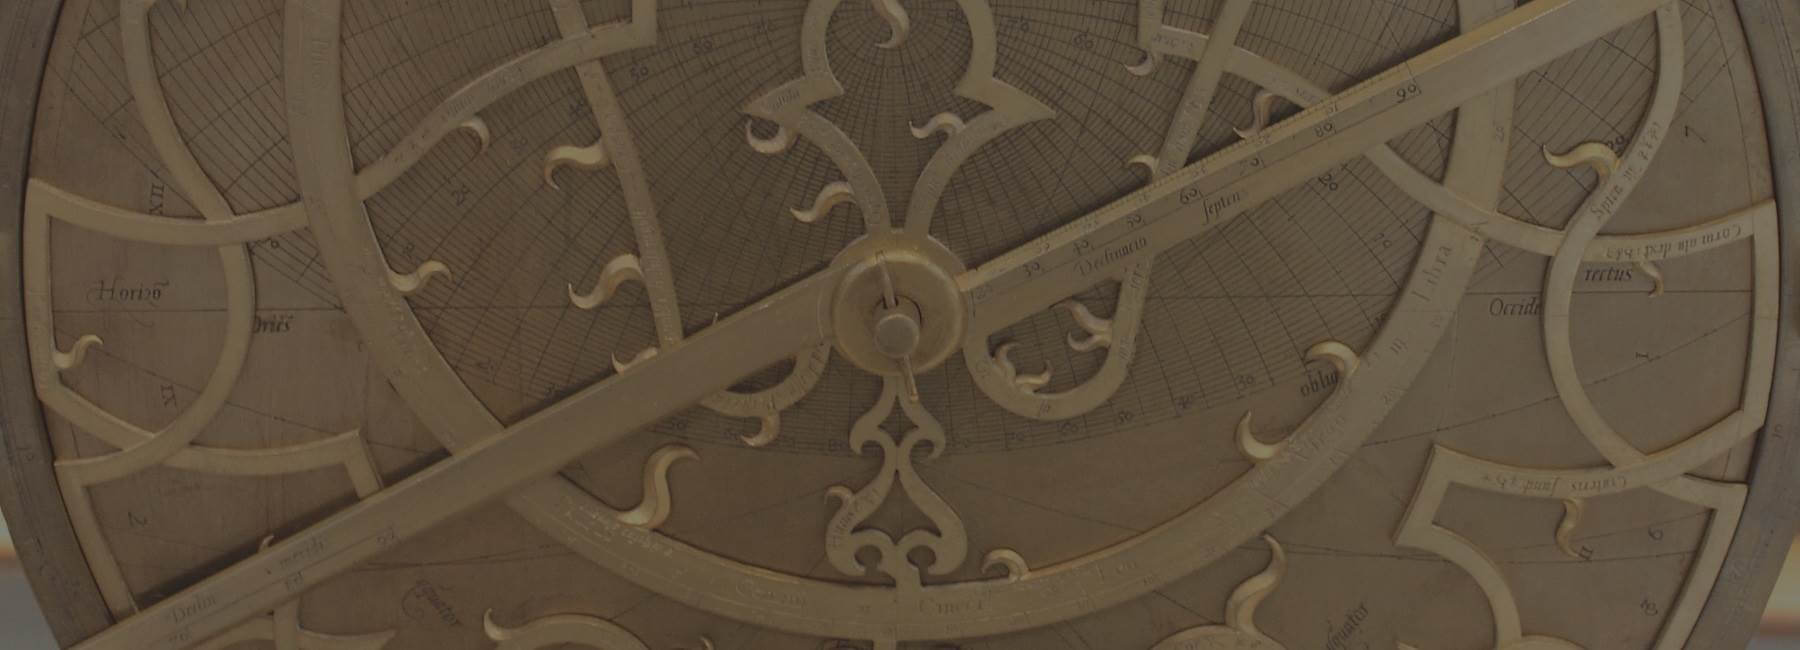 Discover astrolabes